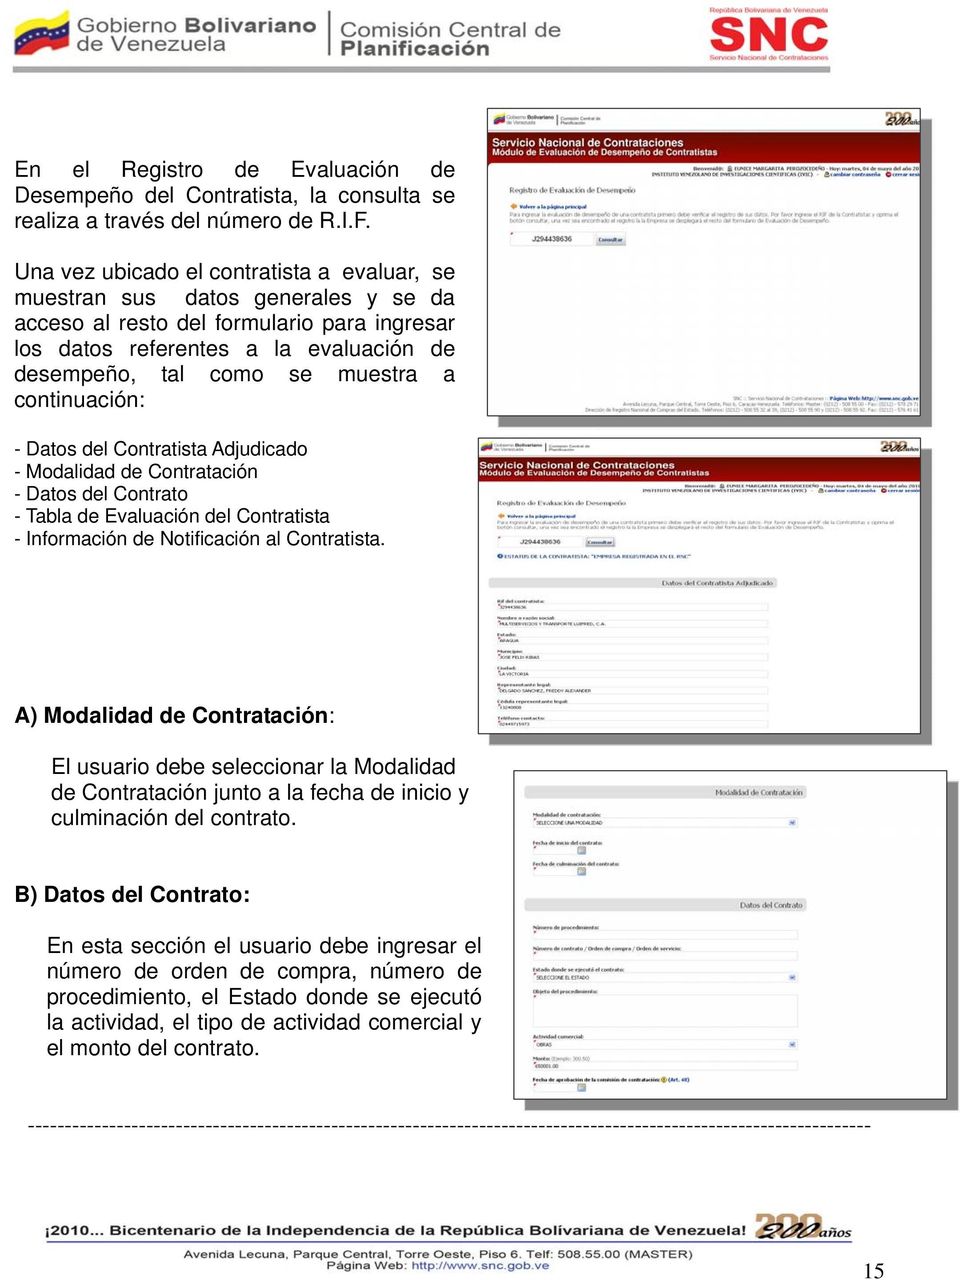 continuación: - Datos del Contratista Adjudicado - Modalidad de Contratación - Datos del Contrato - Tabla de Evaluación del Contratista - Información de Notificación al Contratista.